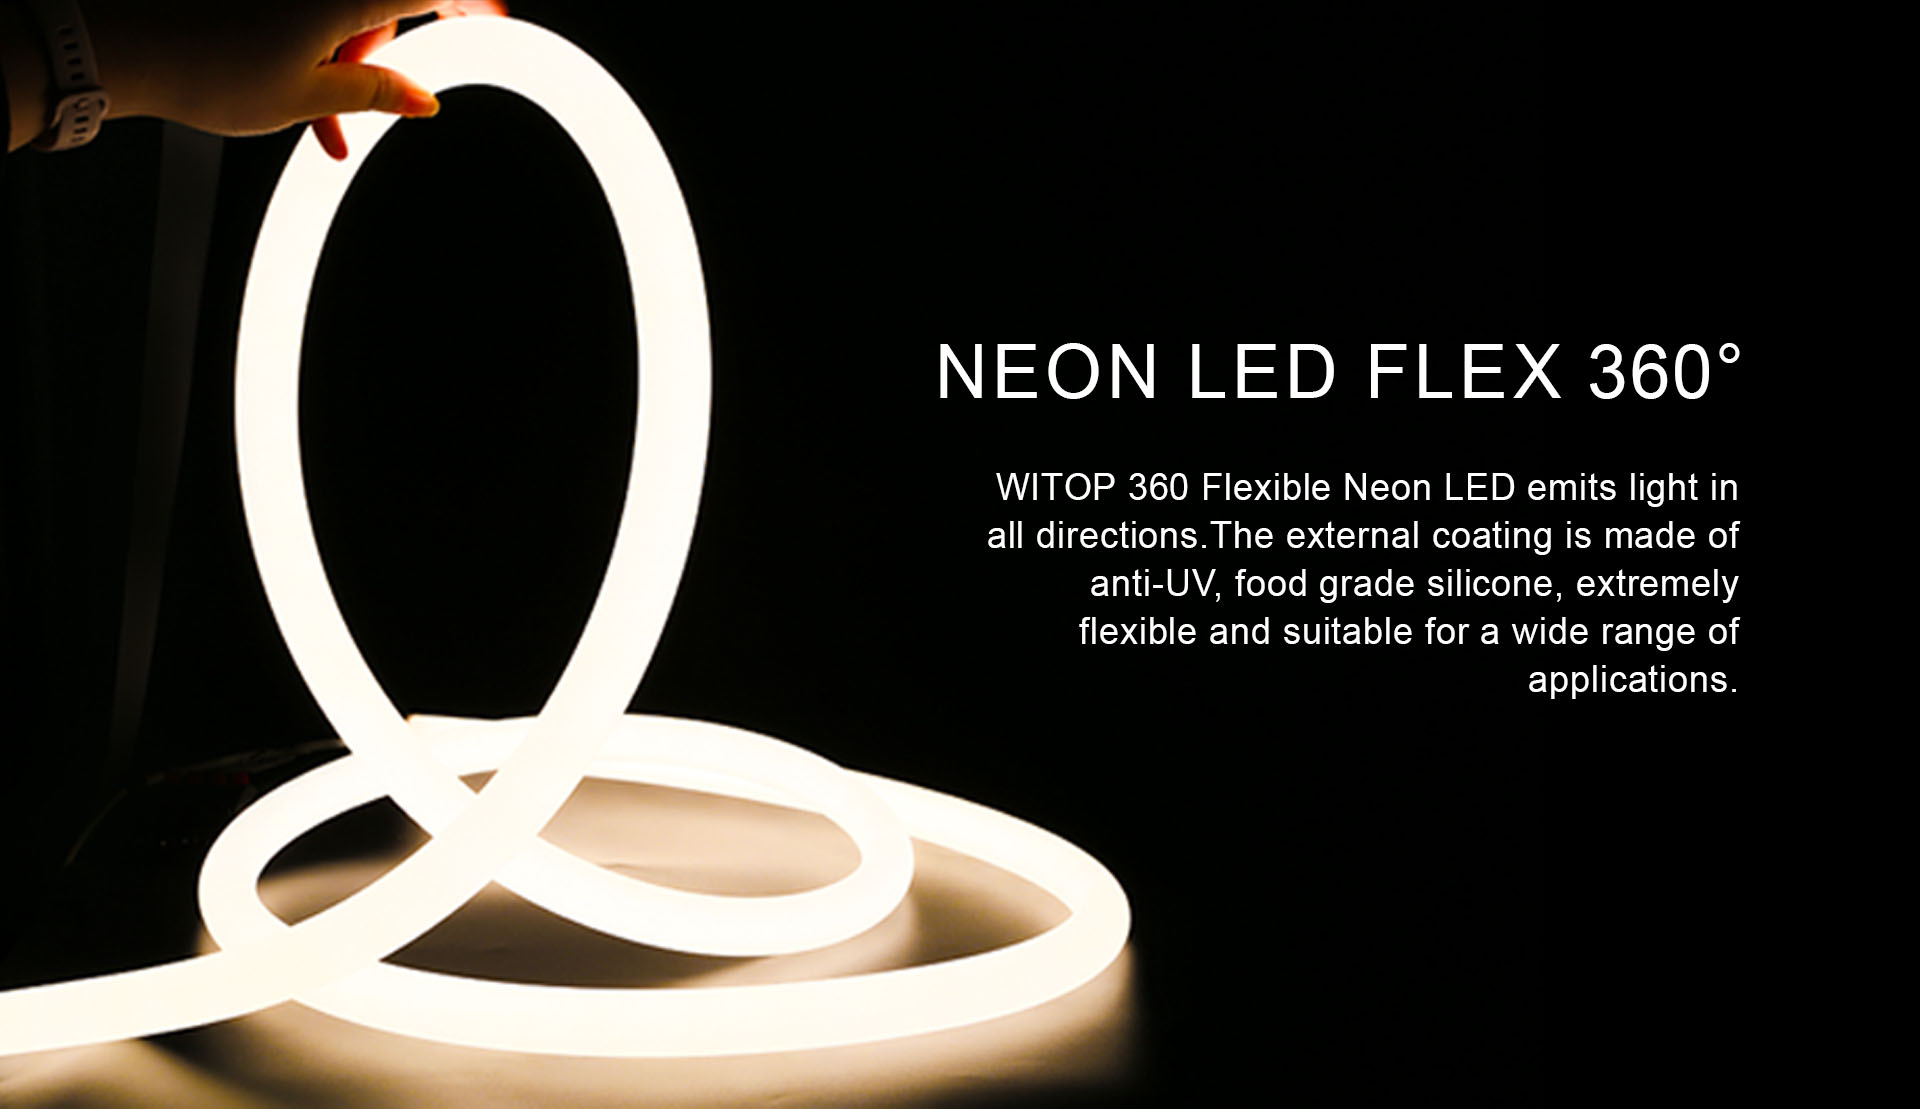 neon flex 360